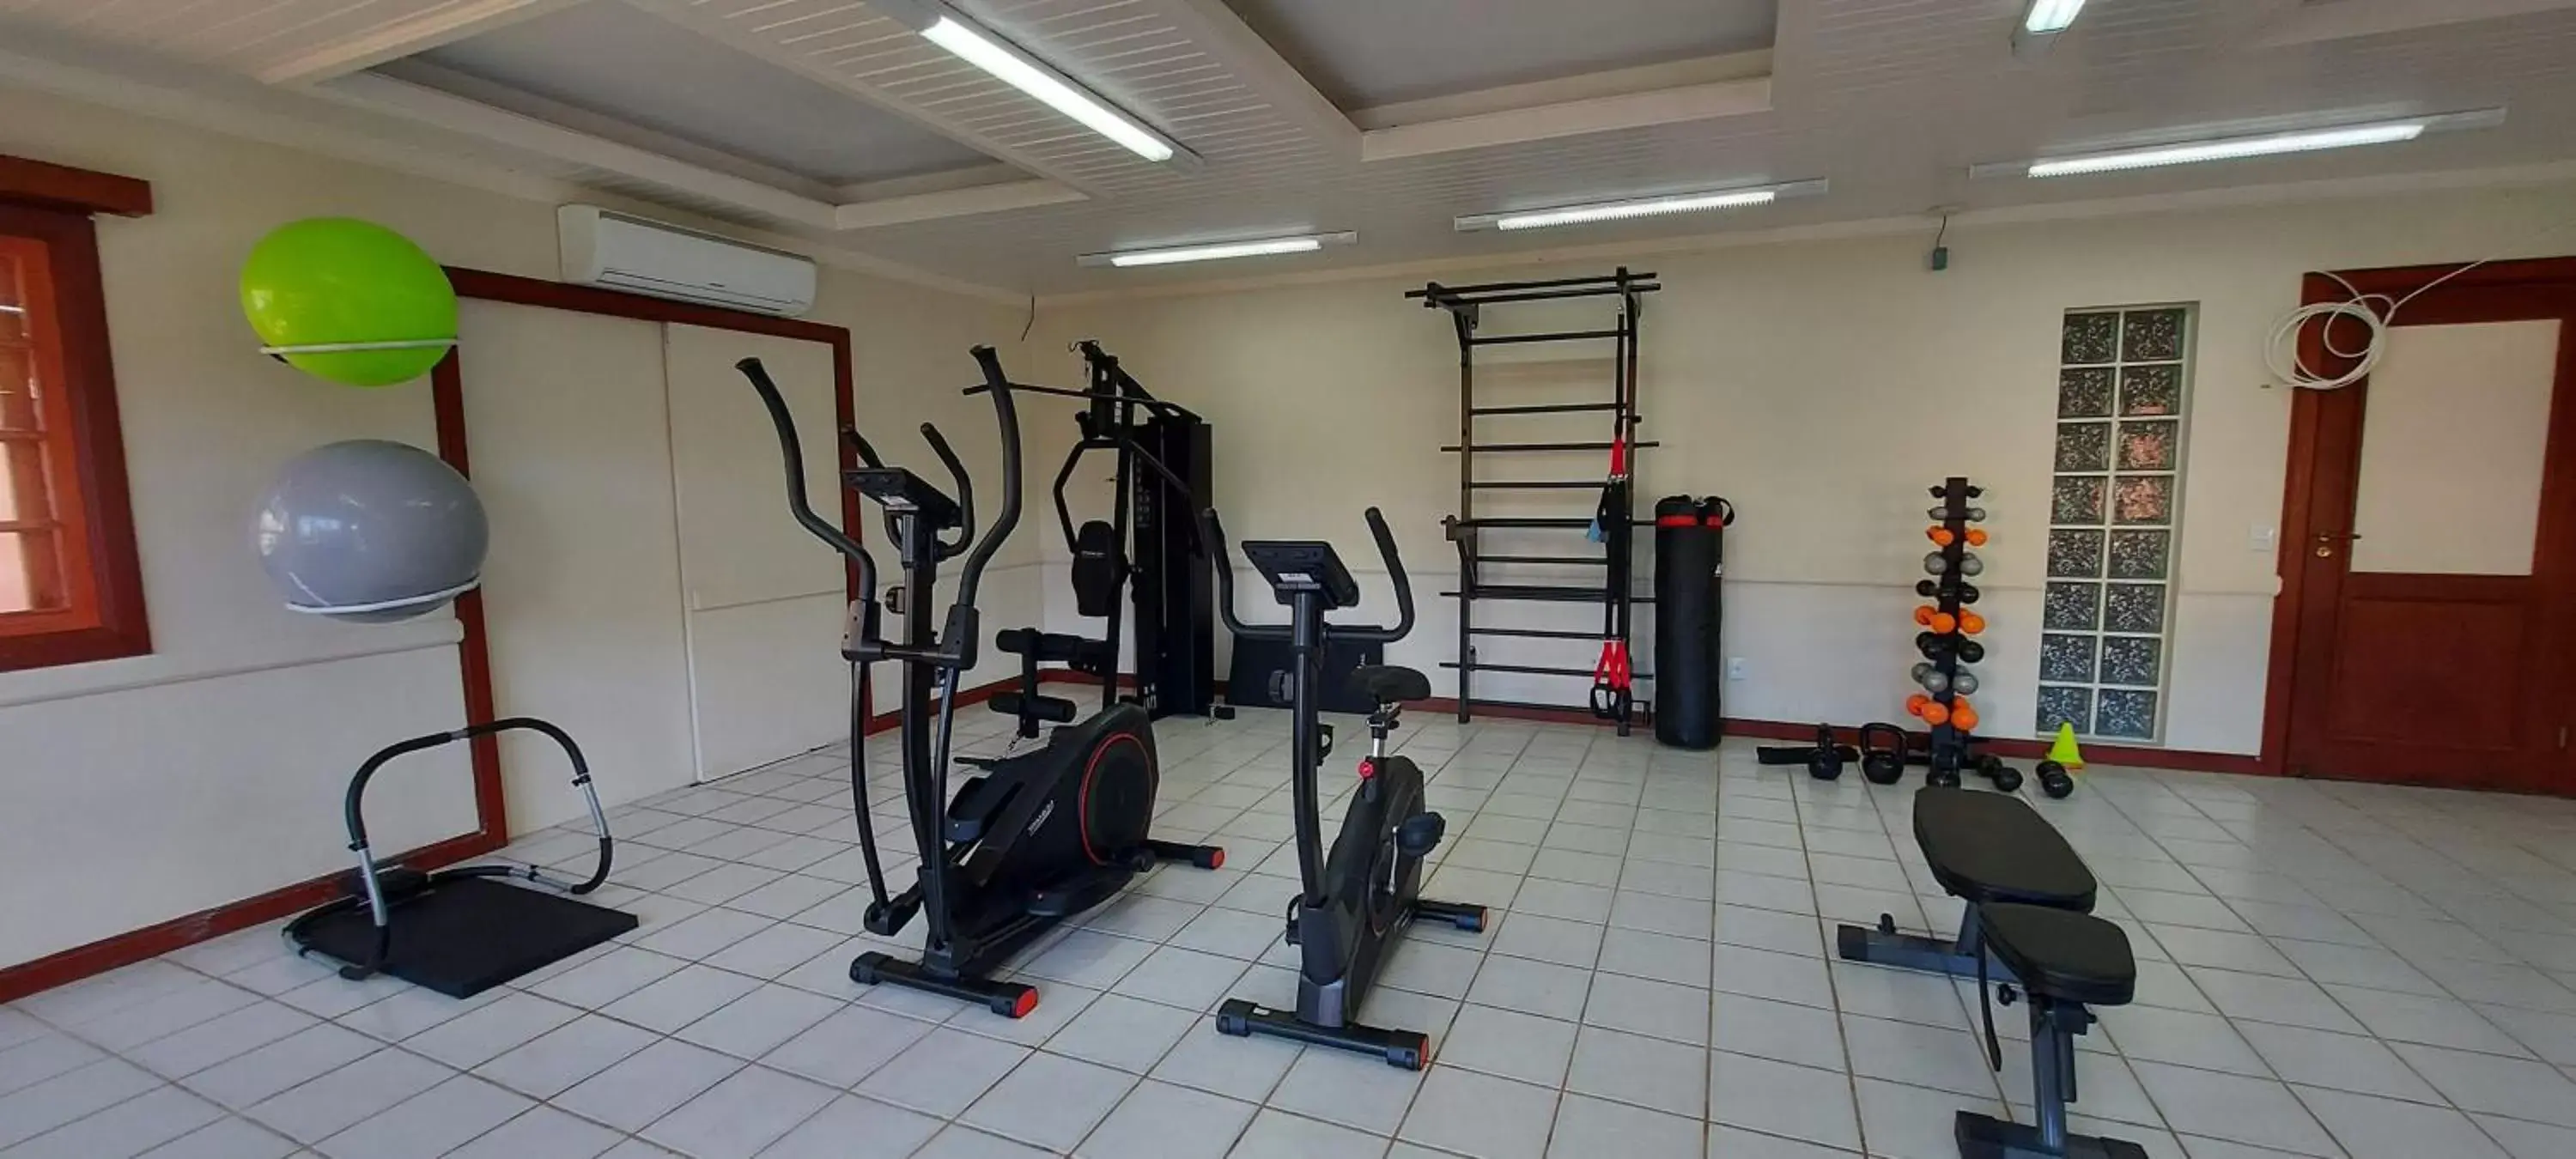 Fitness centre/facilities, Fitness Center/Facilities in Hotel São Sebastião da Praia